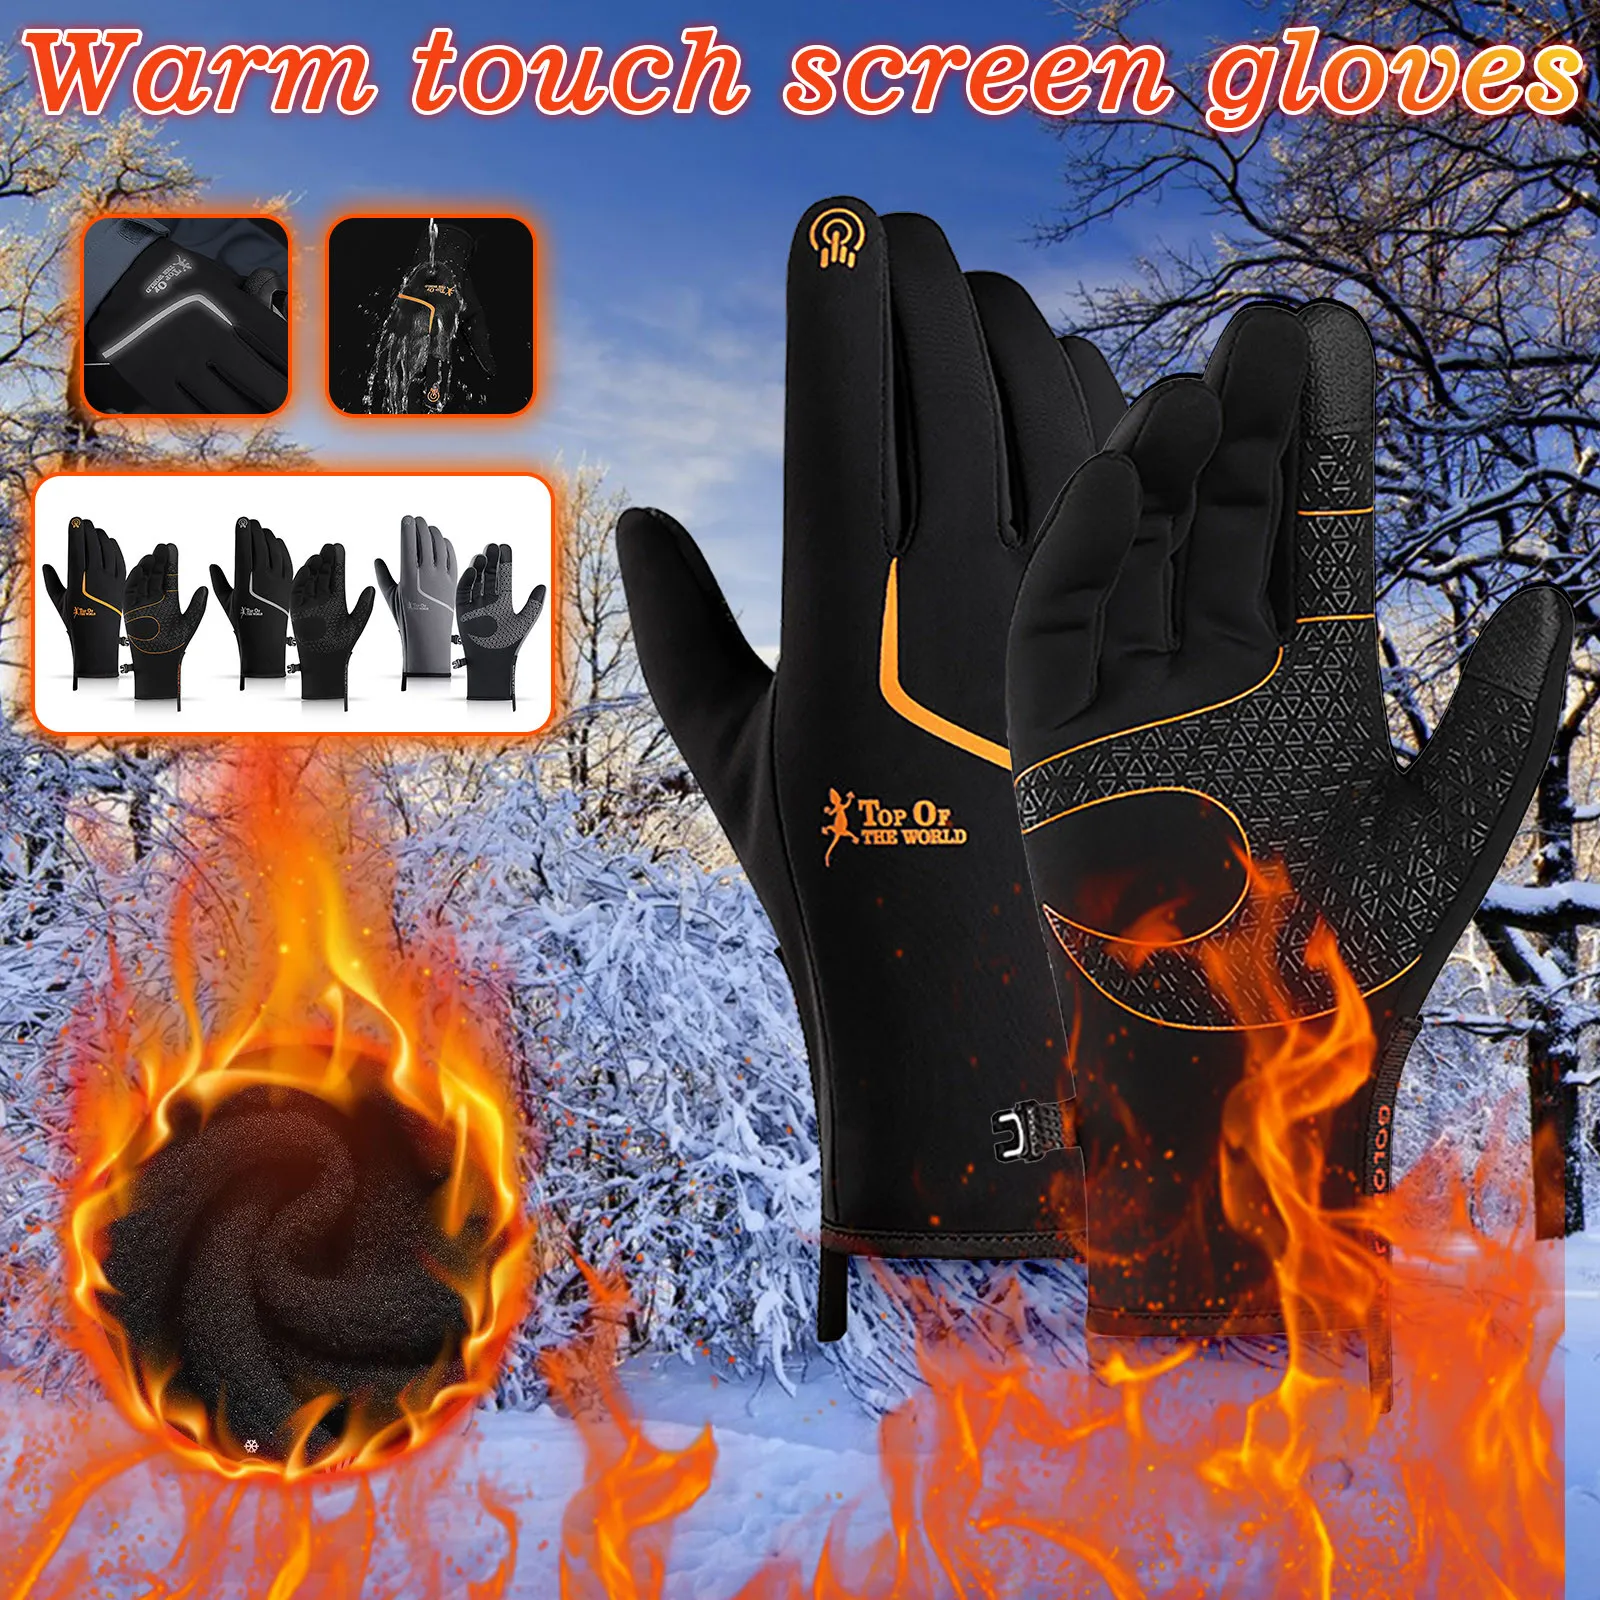 

Мужские и женские водонепроницаемые перчатки для сенсорных экранов на весну и зиму, бархатные теплые ветрозащитные модные уличные Несколь...